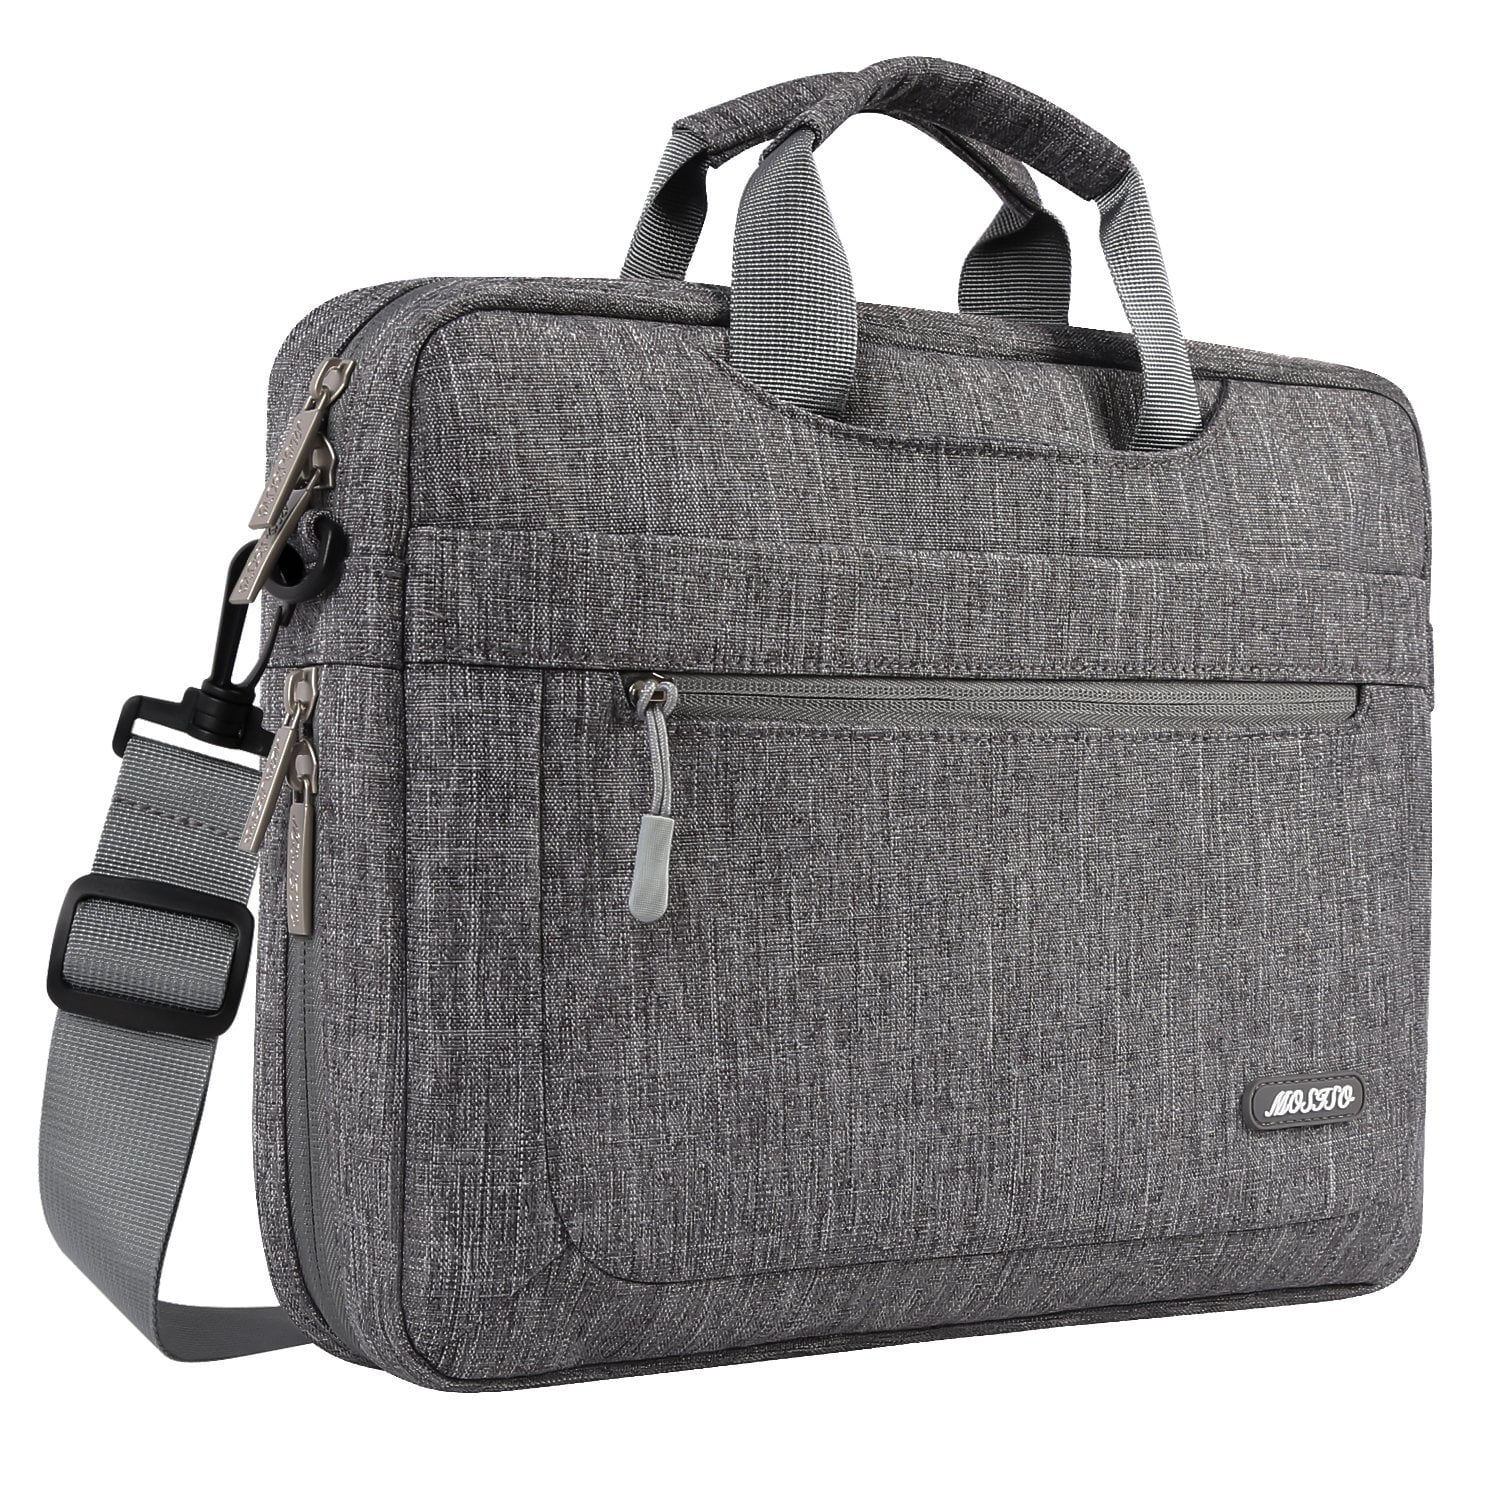 Lightweight 15 inch Laptop Bag Business Messenger Briefcases Transparent Leaves Pattern Bag Case Sleeve Computer Tablet Shoulder Bag Carrying Case Handbag for Men and Women